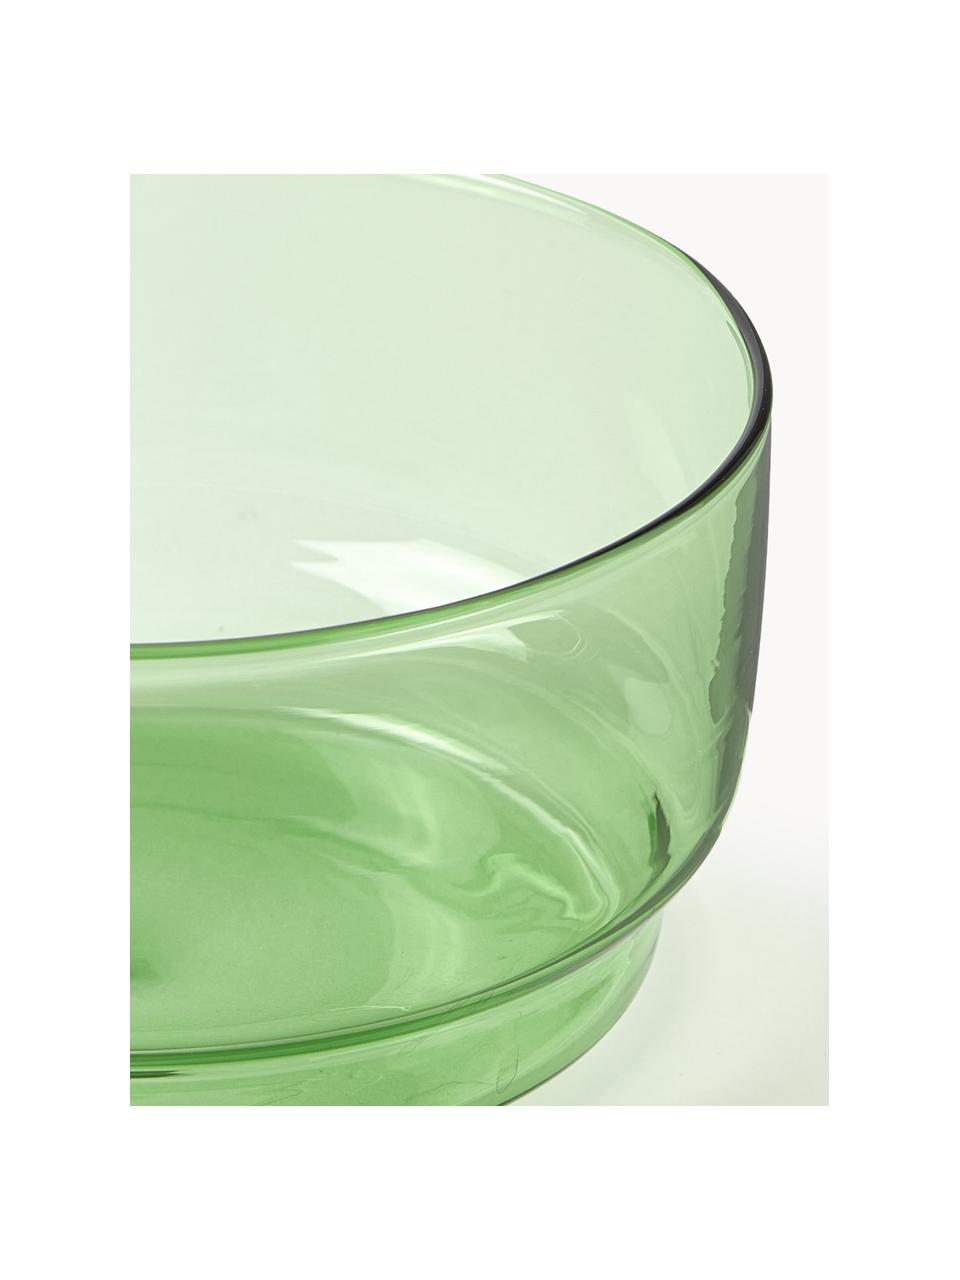 Misky z borosilikátového skla Torino, 2 ks, Borosilikátové sklo

Objavte všestrannosť borosilikátového skla pre váš domov! Borosilikátové sklo je kvalitný, spoľahlivý a robustný materiál. Vyznačuje sa mimoriadnou tepelnou odolnosťou a preto je ideálny pre váš horúci čaj alebo kávu. V porovnaní s klasickým sklom je borosilikátové sklo odolnejšie voči rozbitiu a prasknutiu, a preto je bezpečným spoločníkom vo vašej domácnosti., Zelená, priehľadná, Ø 12 x V 6 cm